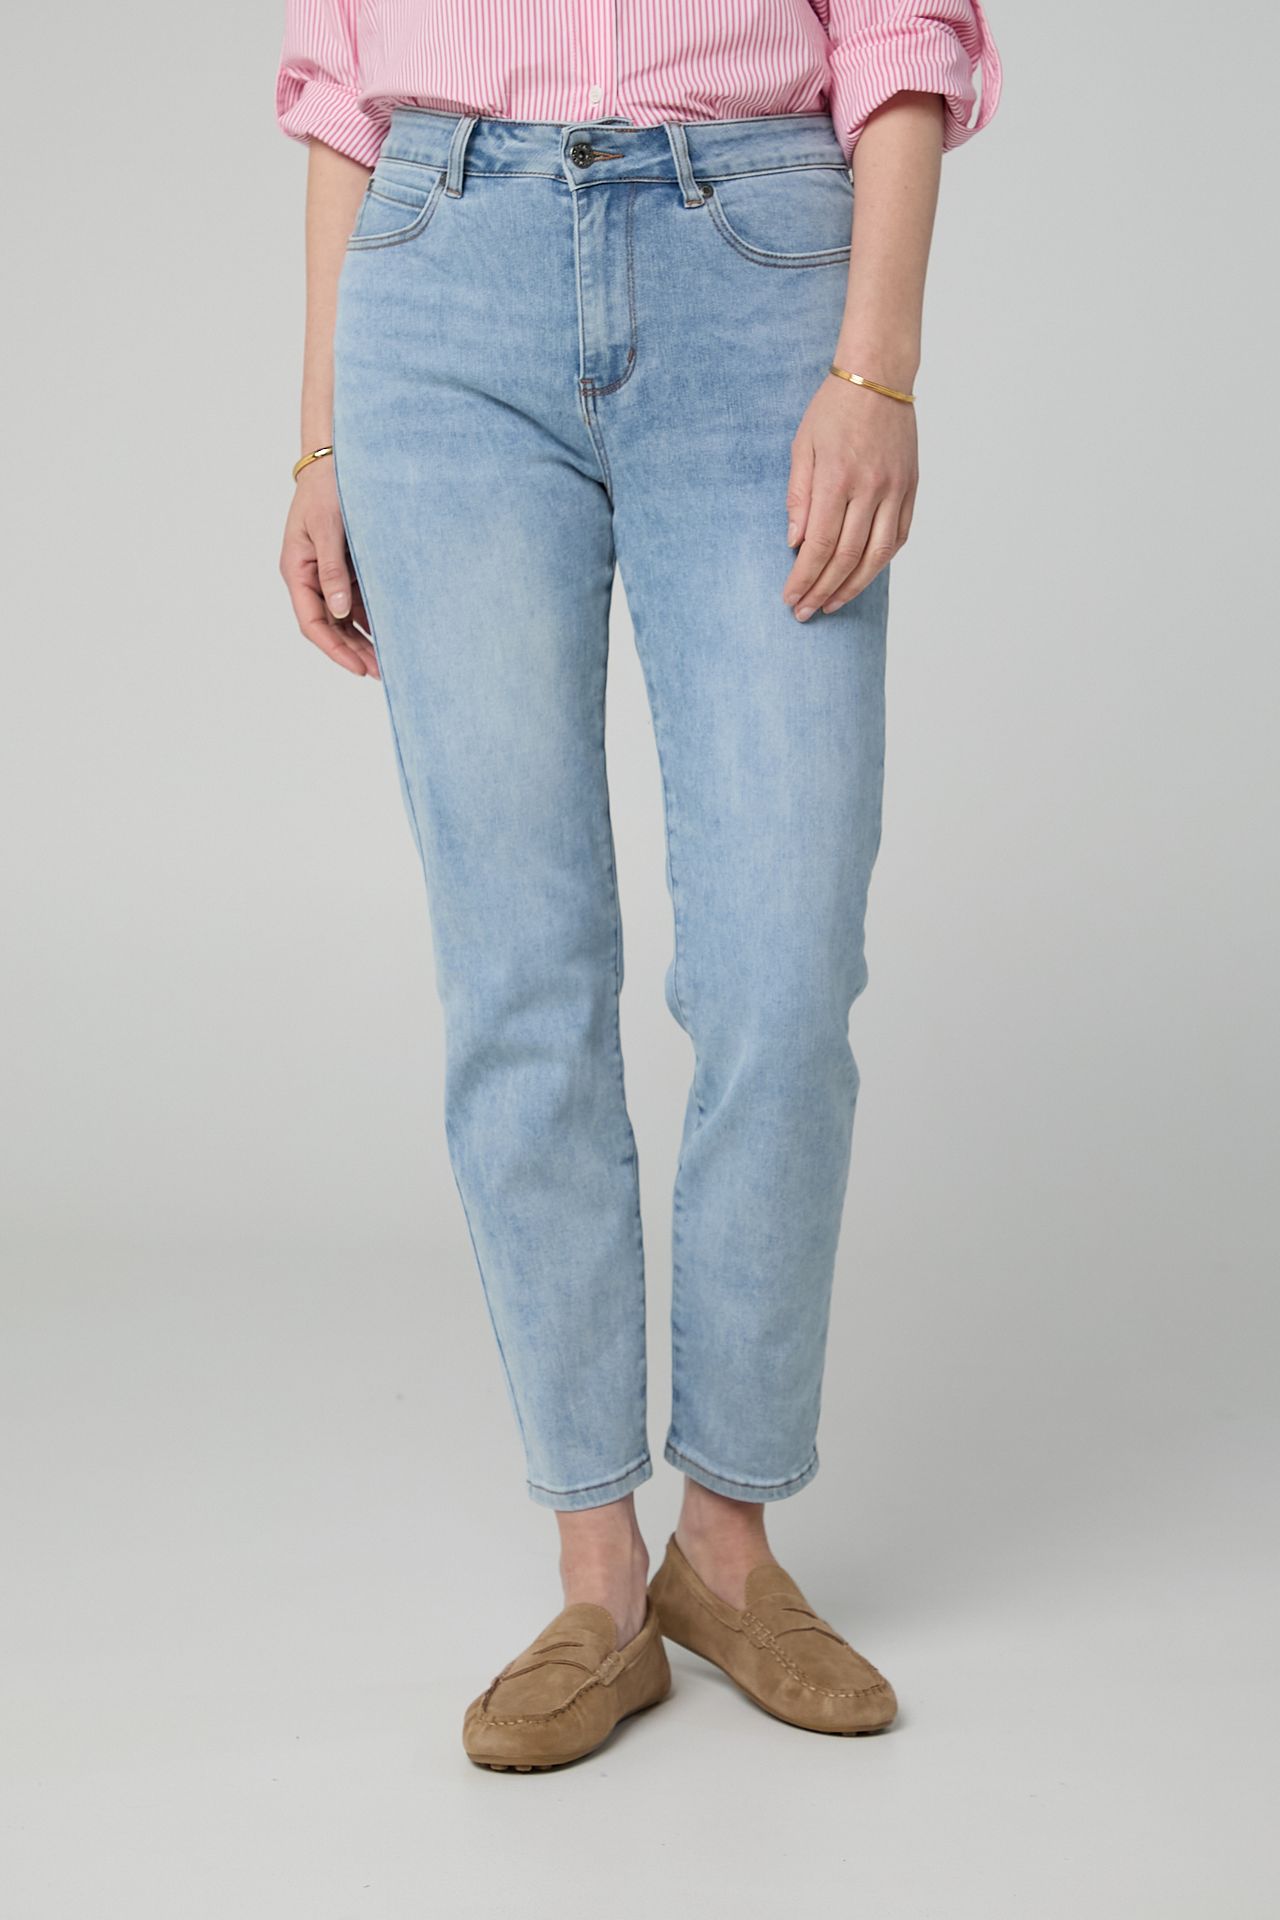 Norah Lichtblauwe denim jeans blue 213885-400